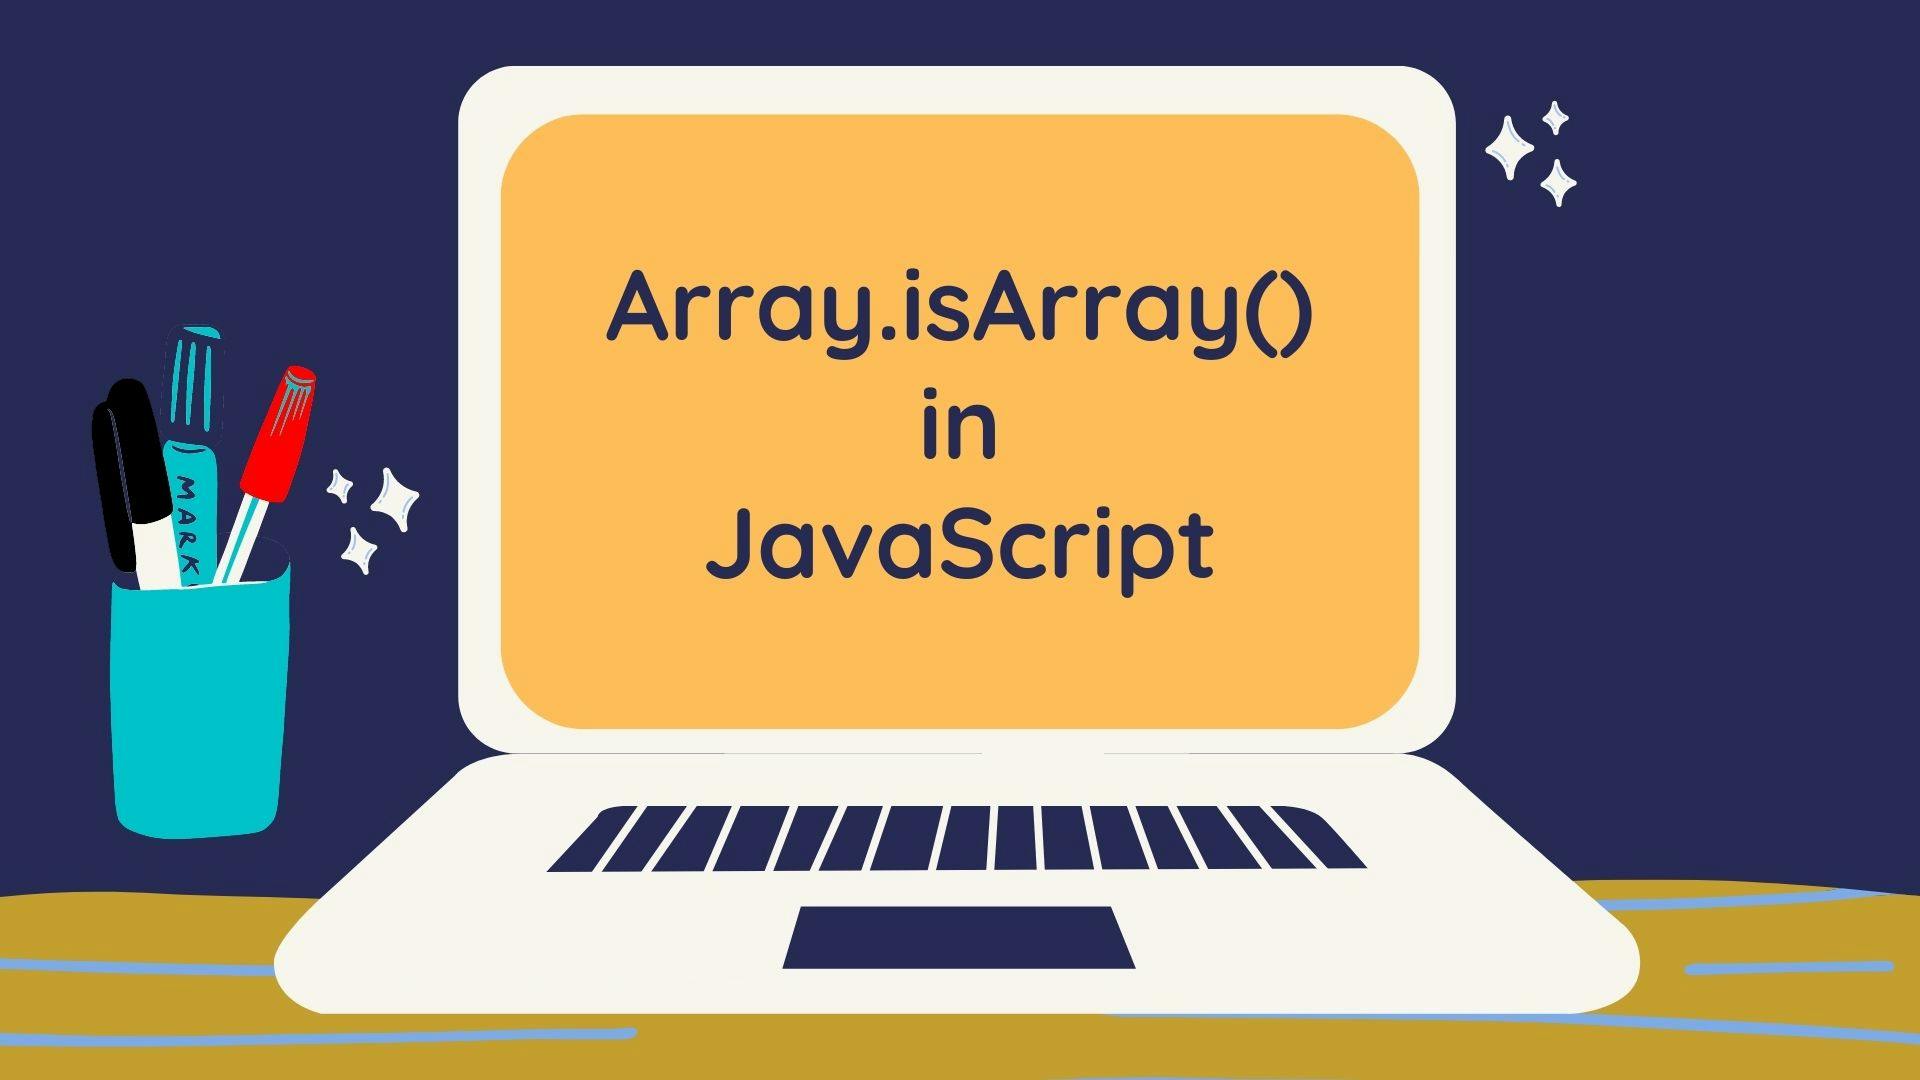 Javascript array.isarray() method